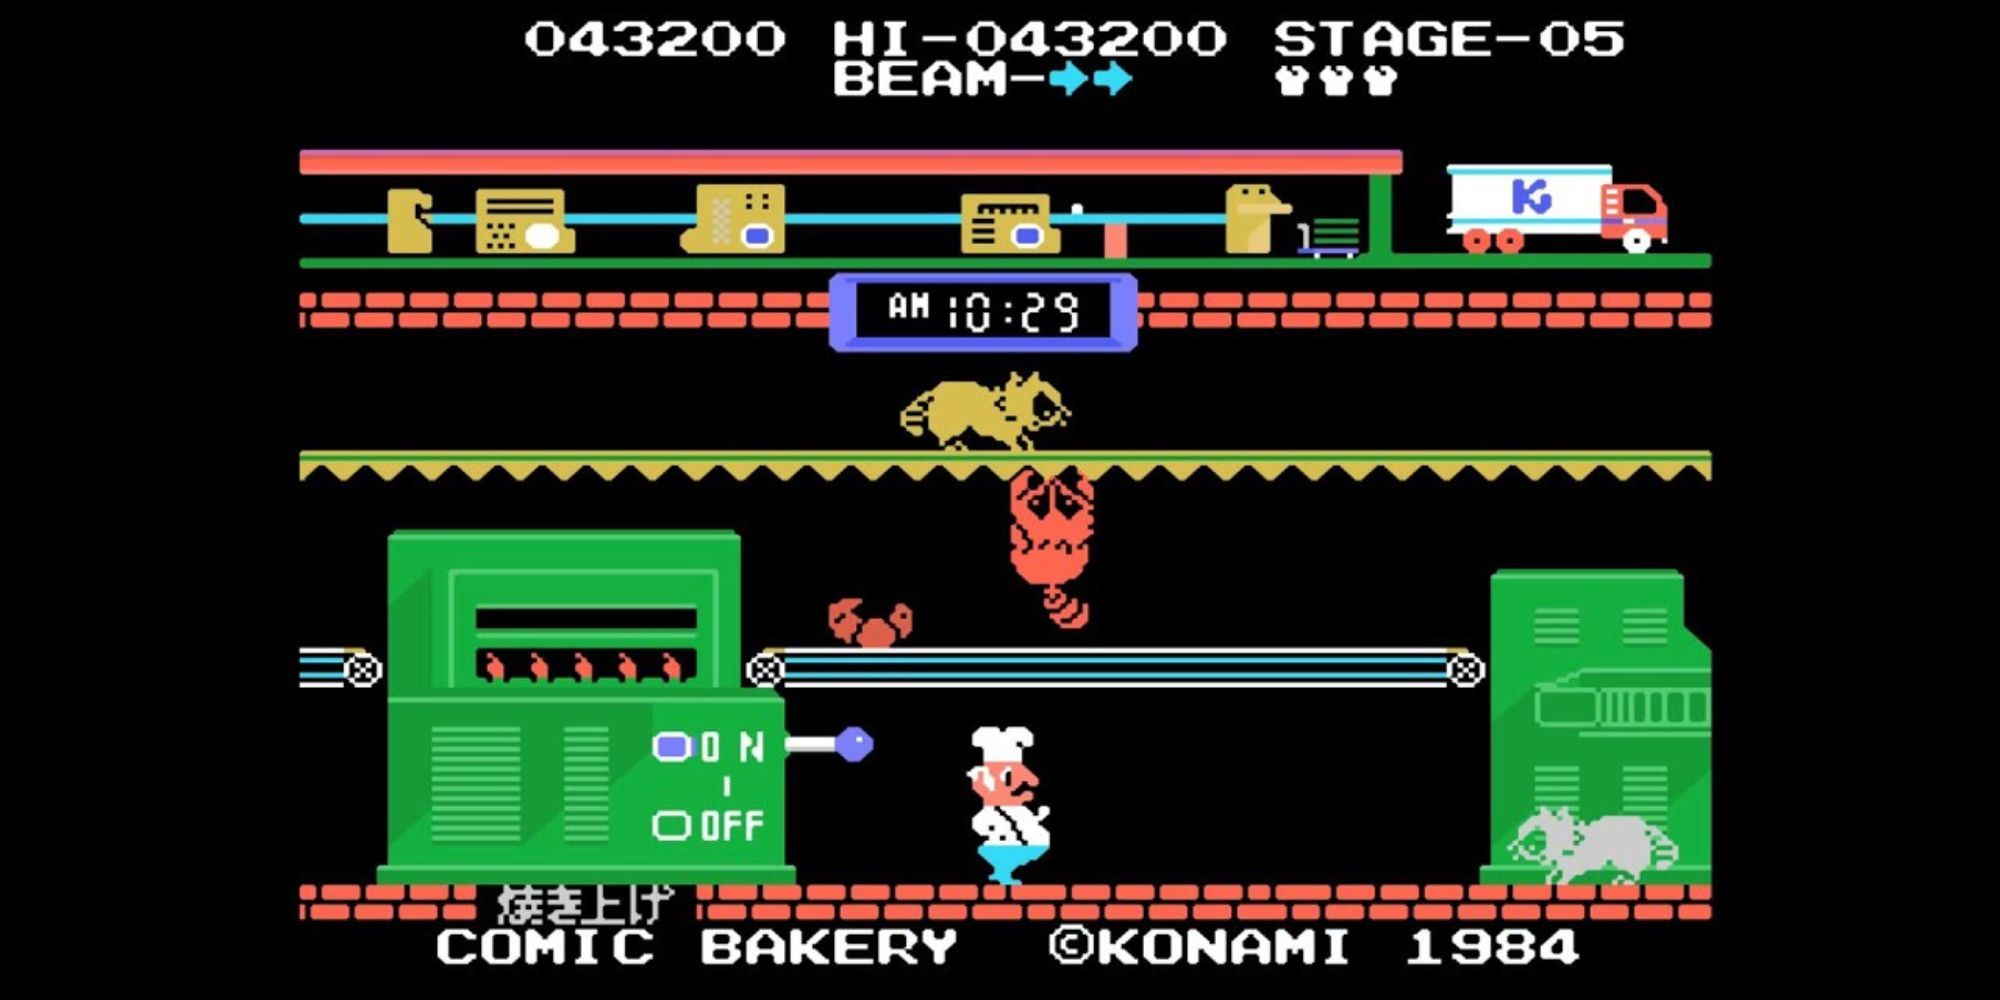 Еноты роятся в пекарне в Comic Bakery, пока игрок пытается от них отбиться.